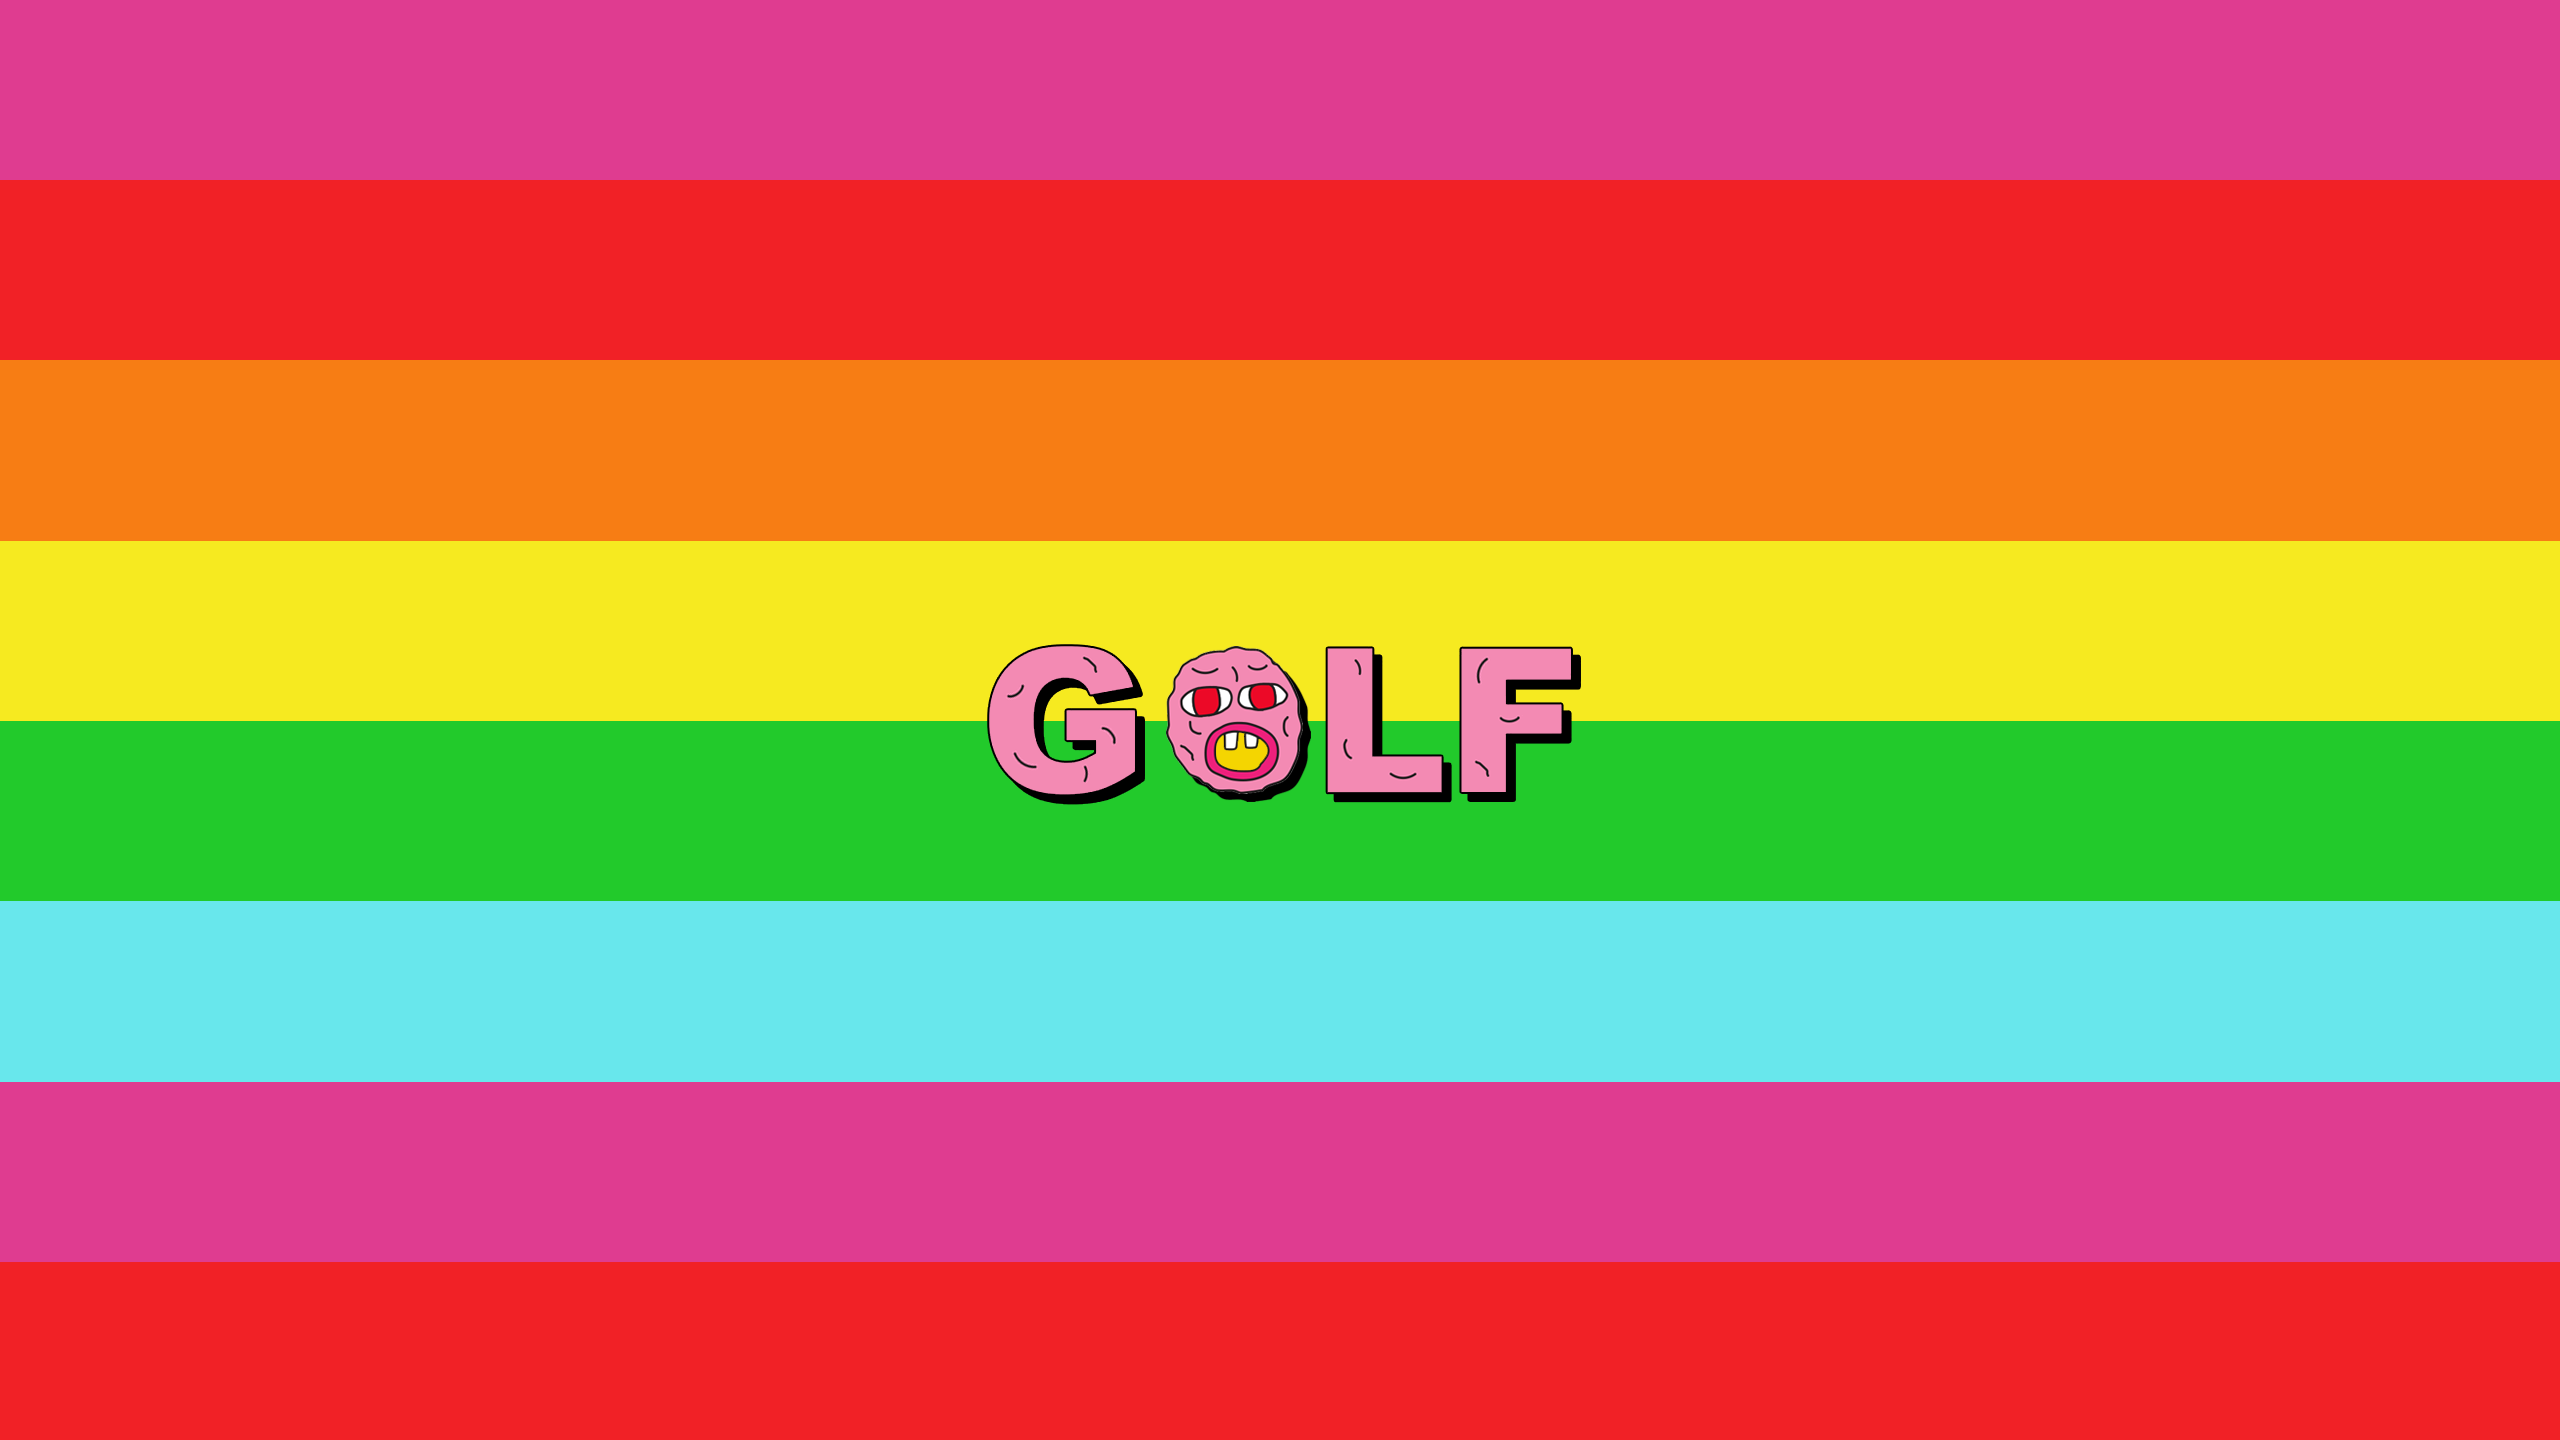 ゴルフ王壁紙,テキスト,ピンク,緑,黄,フォント